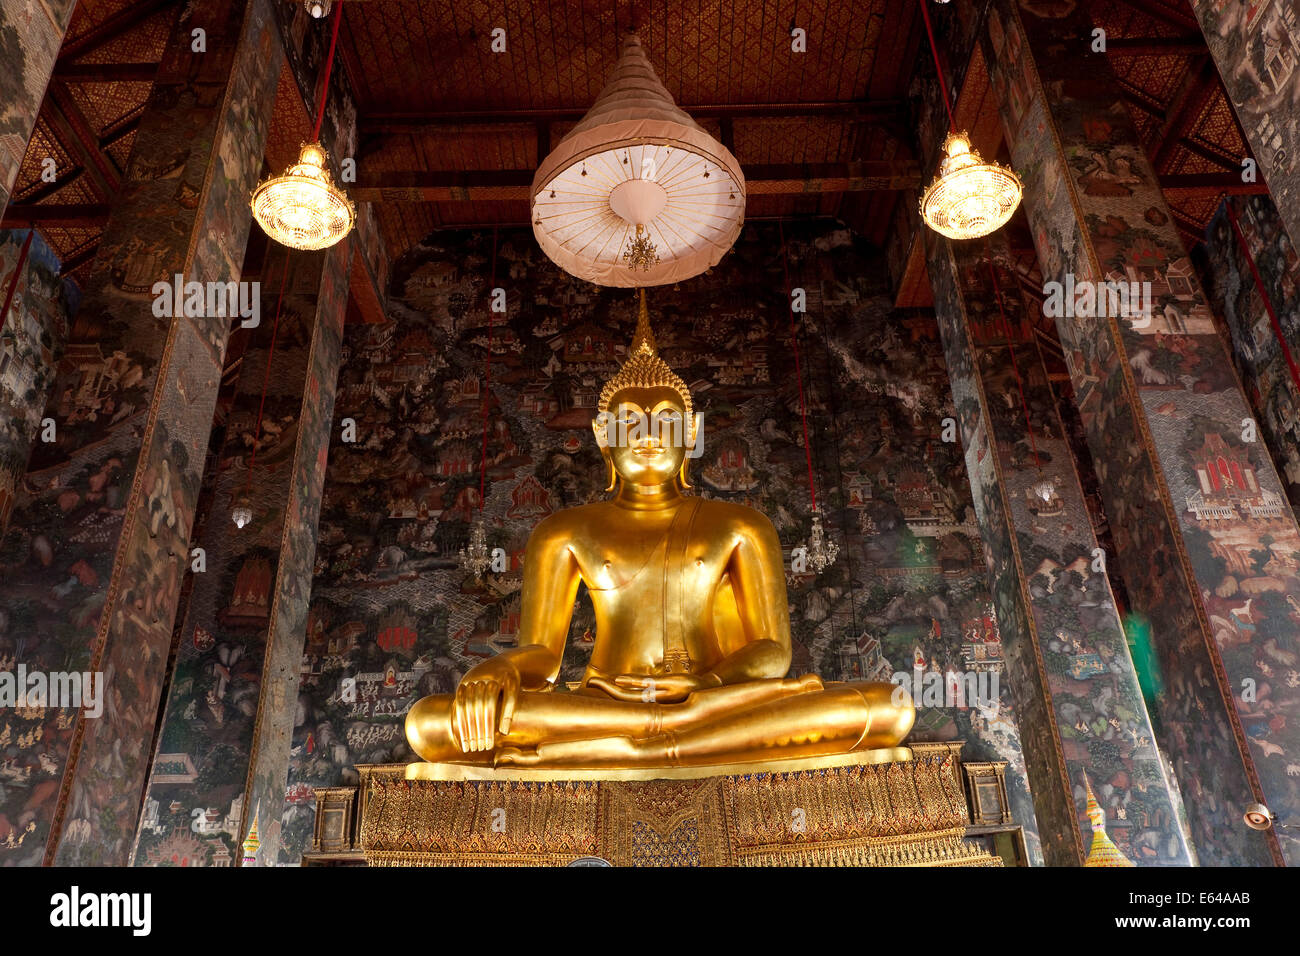 Gallery of Buddhas at Wat Suthat or Wat Suthat Thepwararam, Bangkok, Thailand Stock Photo